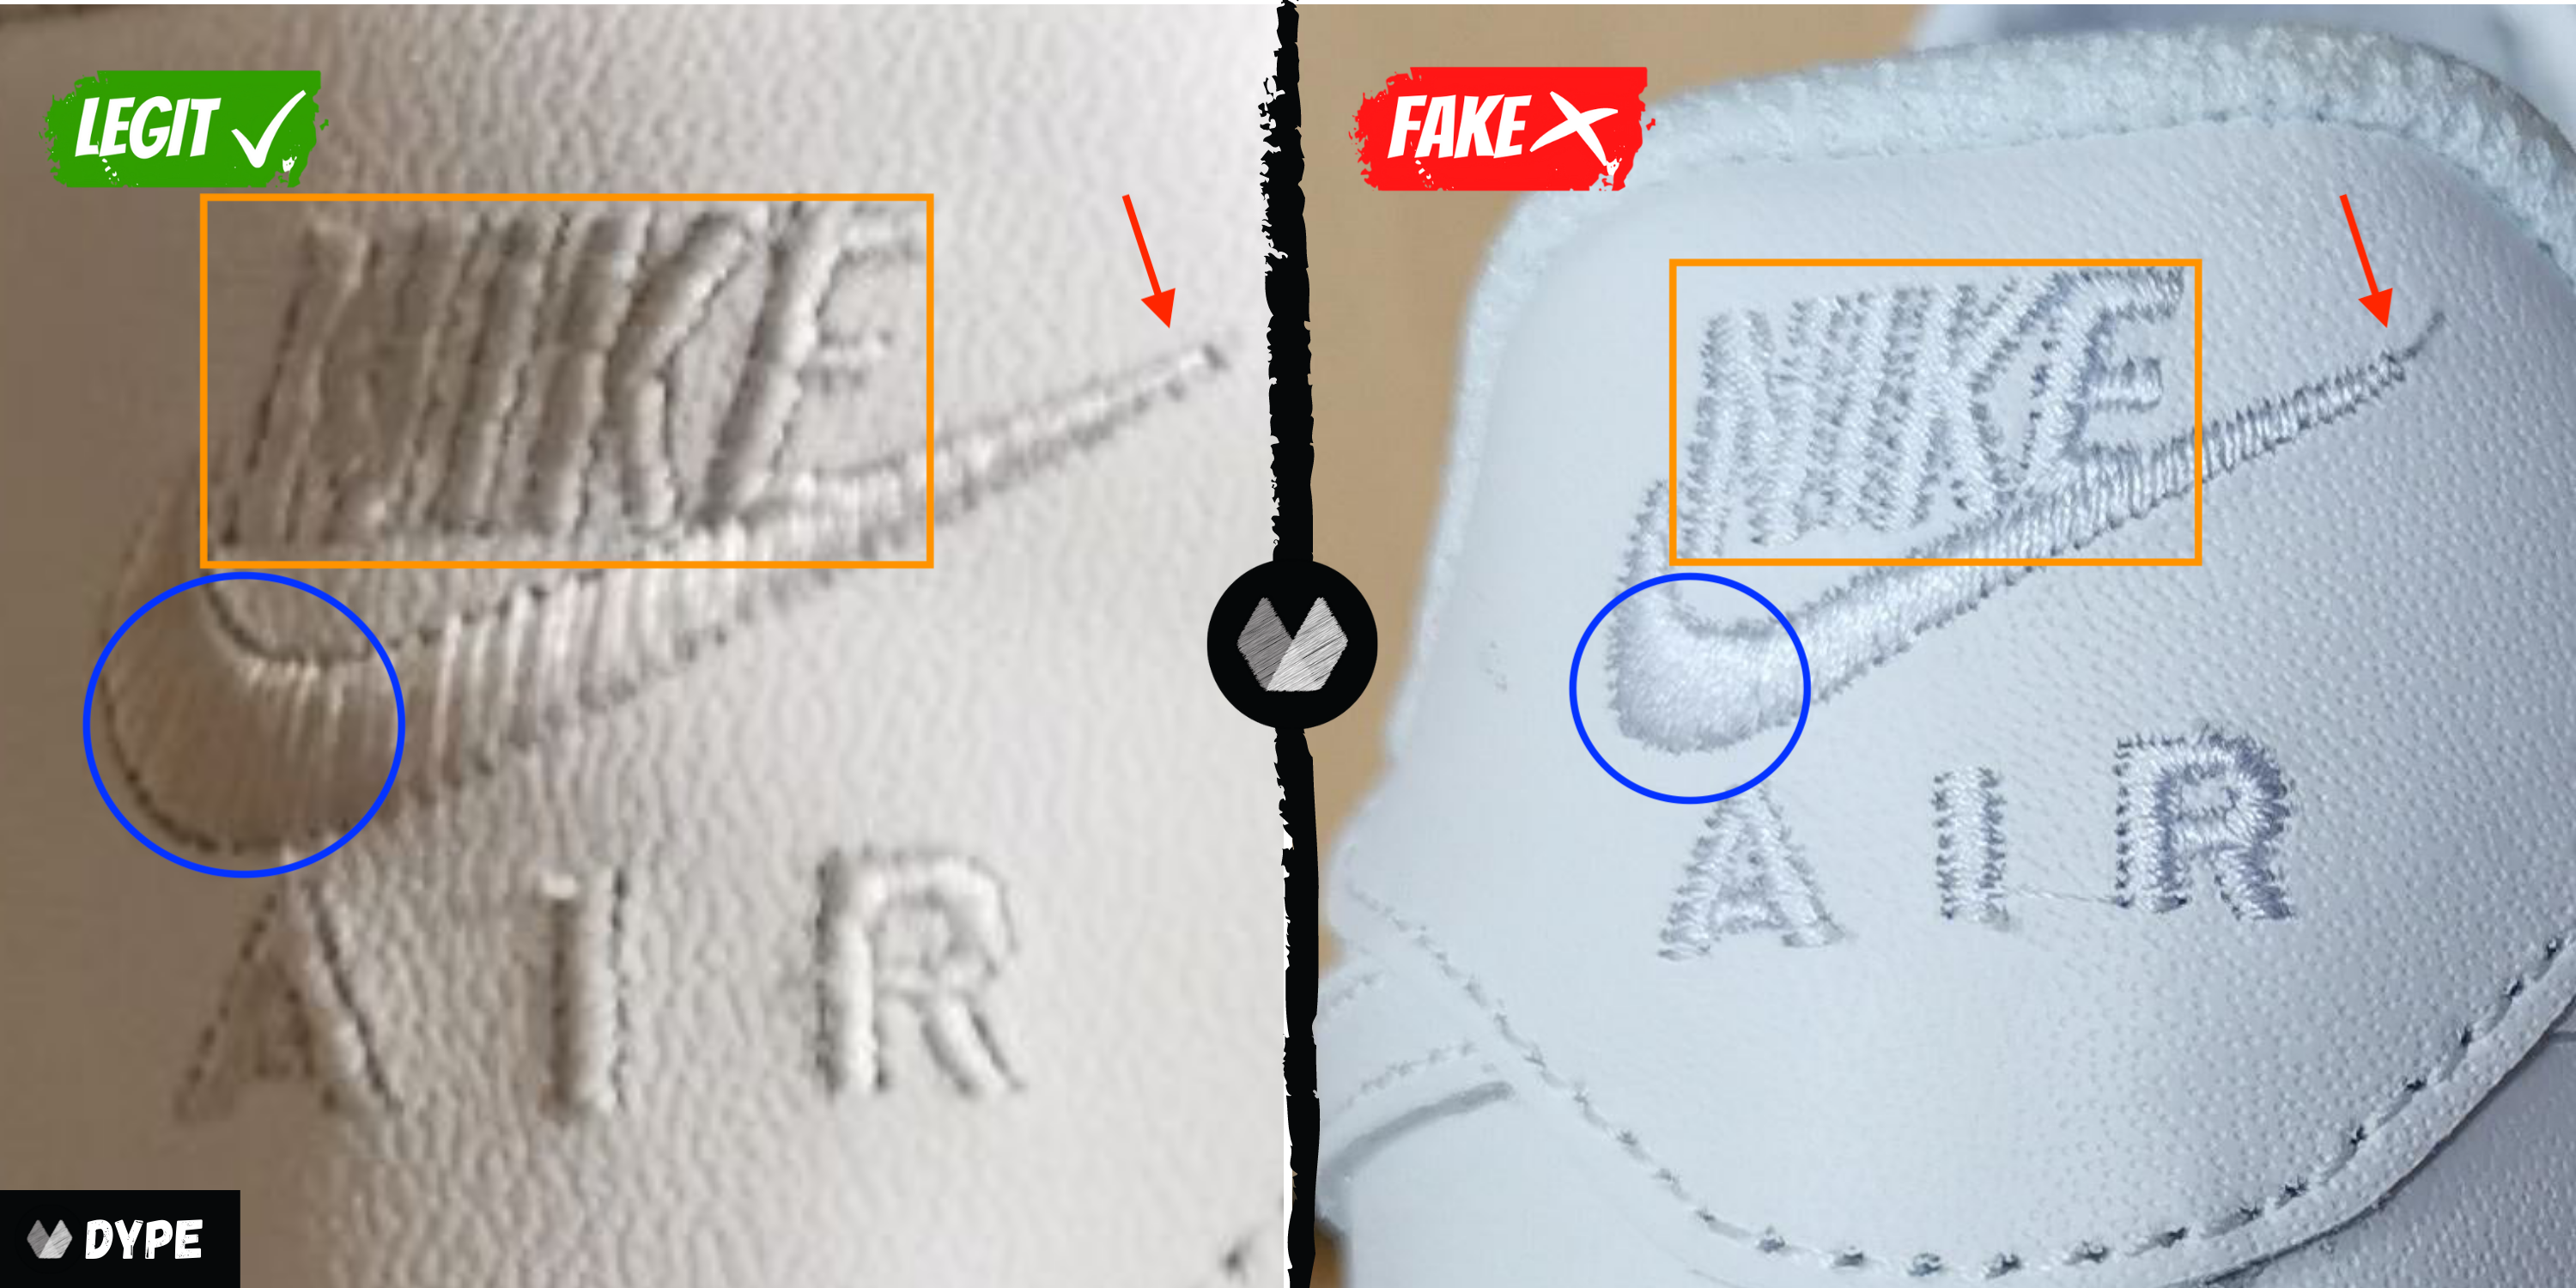 REAL VS FAKE - Louis Vuitton x Supreme LEGIT CHECK + COMPARISON